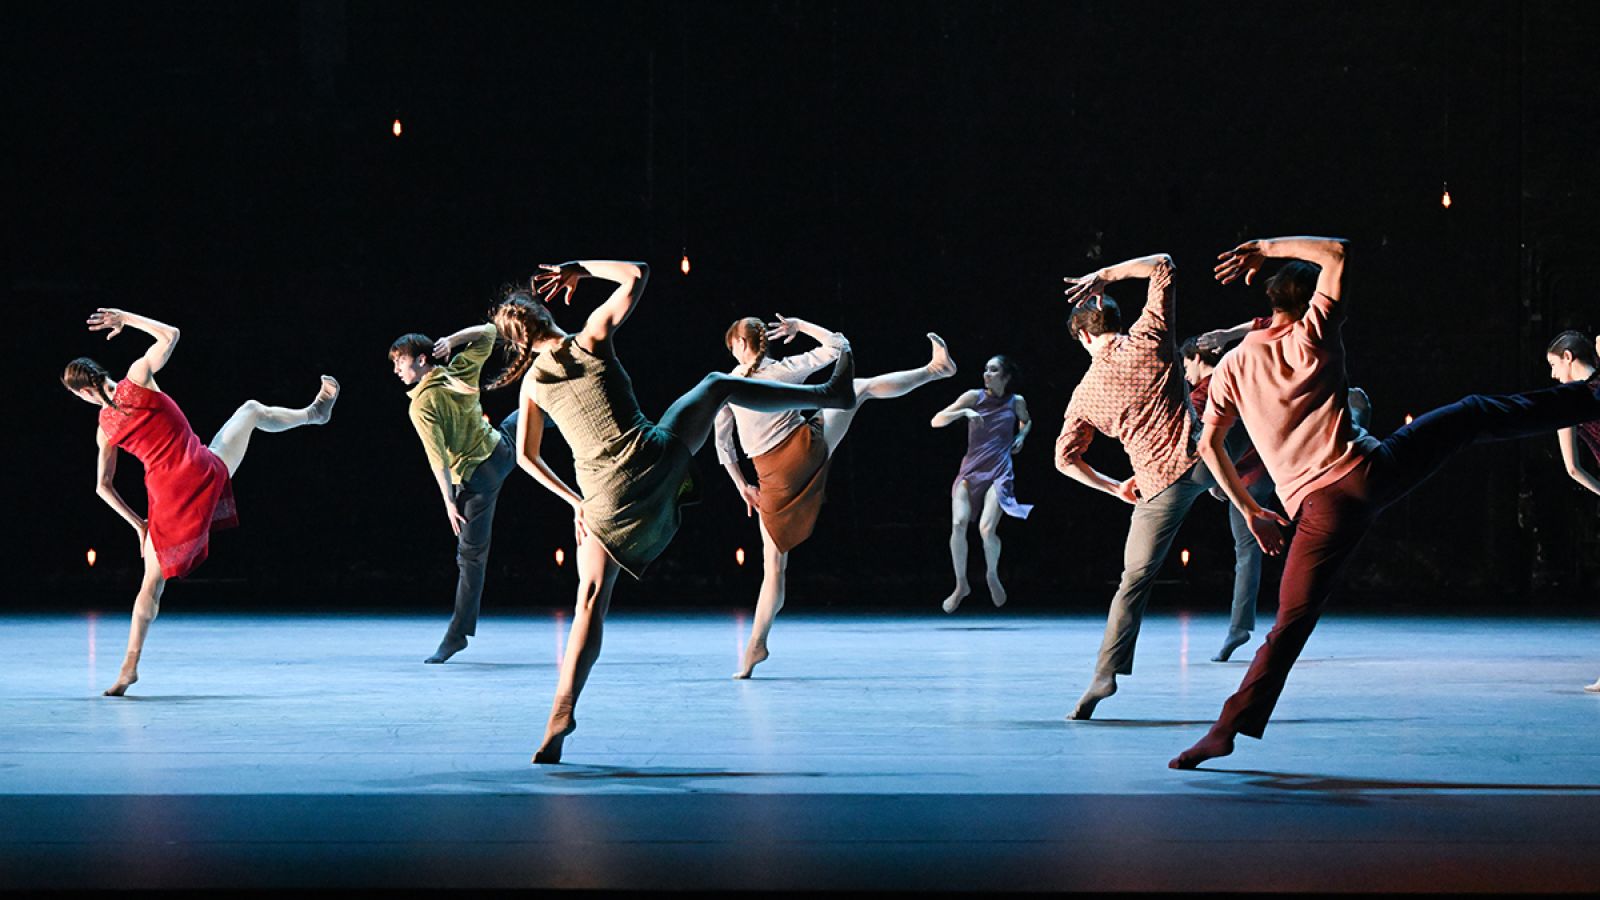 The Stuttgart Ballet presents "Pure Bliss" by Johan Inger